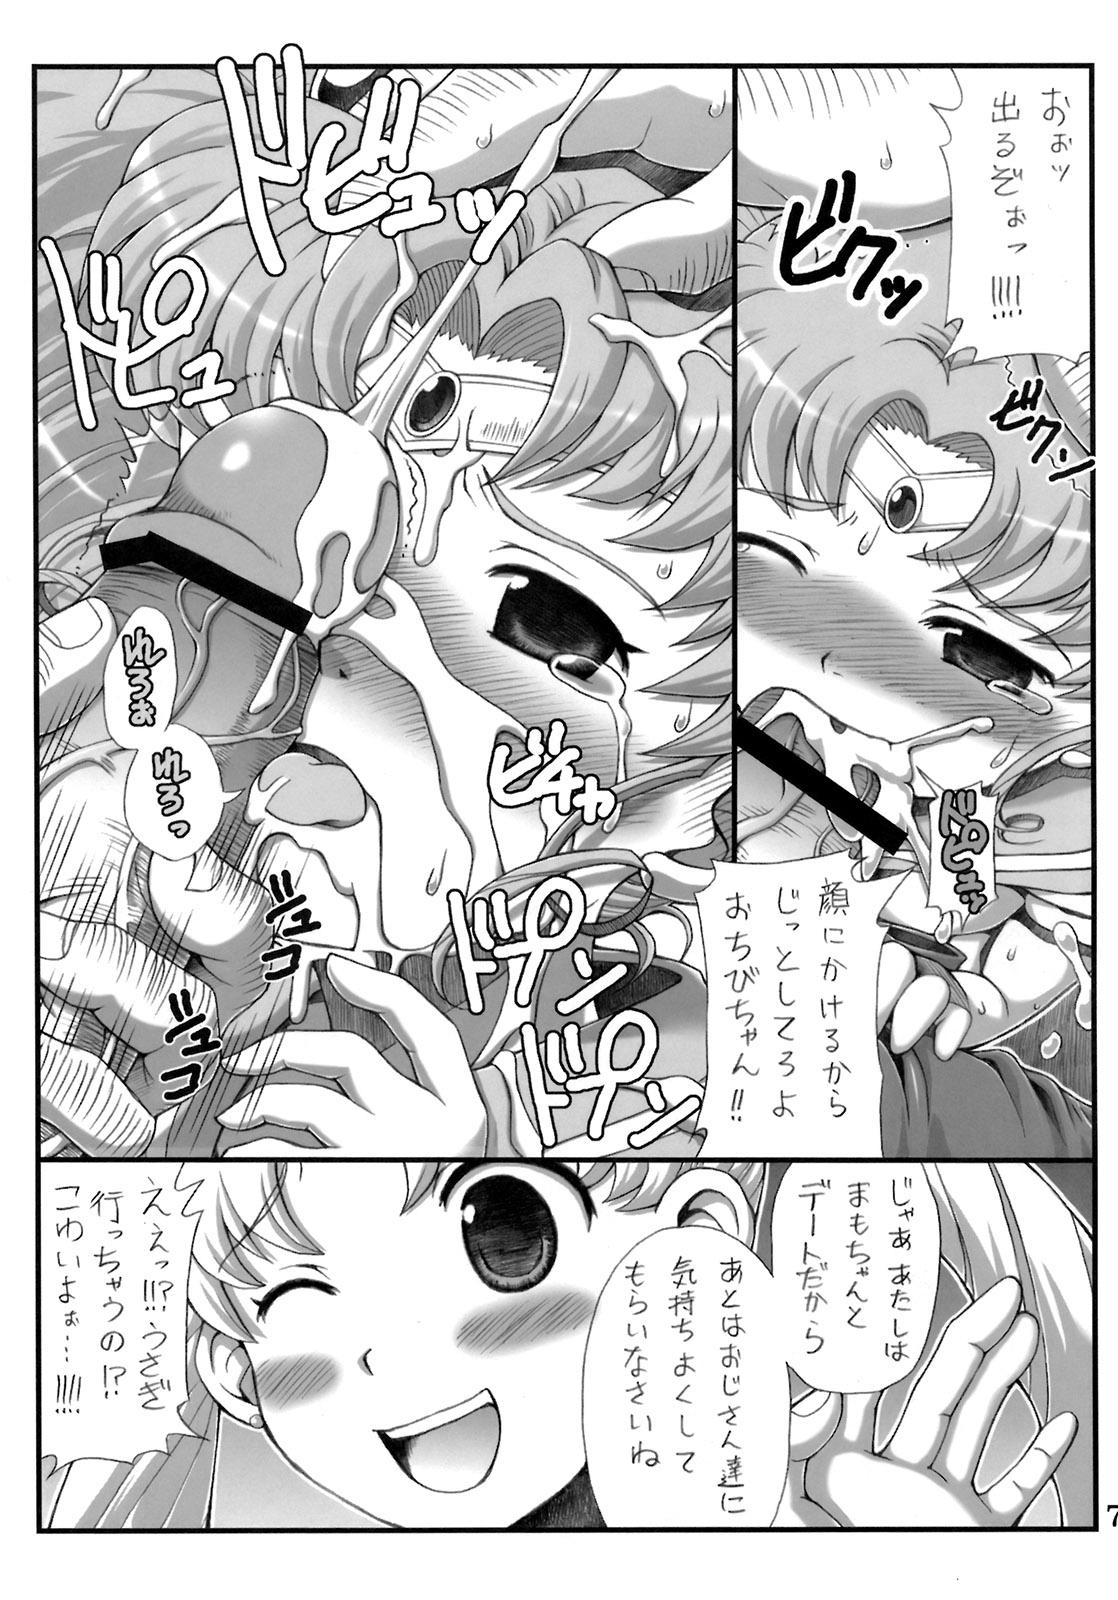 Foreskin Lovely Battle Suit HALF & HALF - Sailor moon Sakura taisen Imvu - Page 6